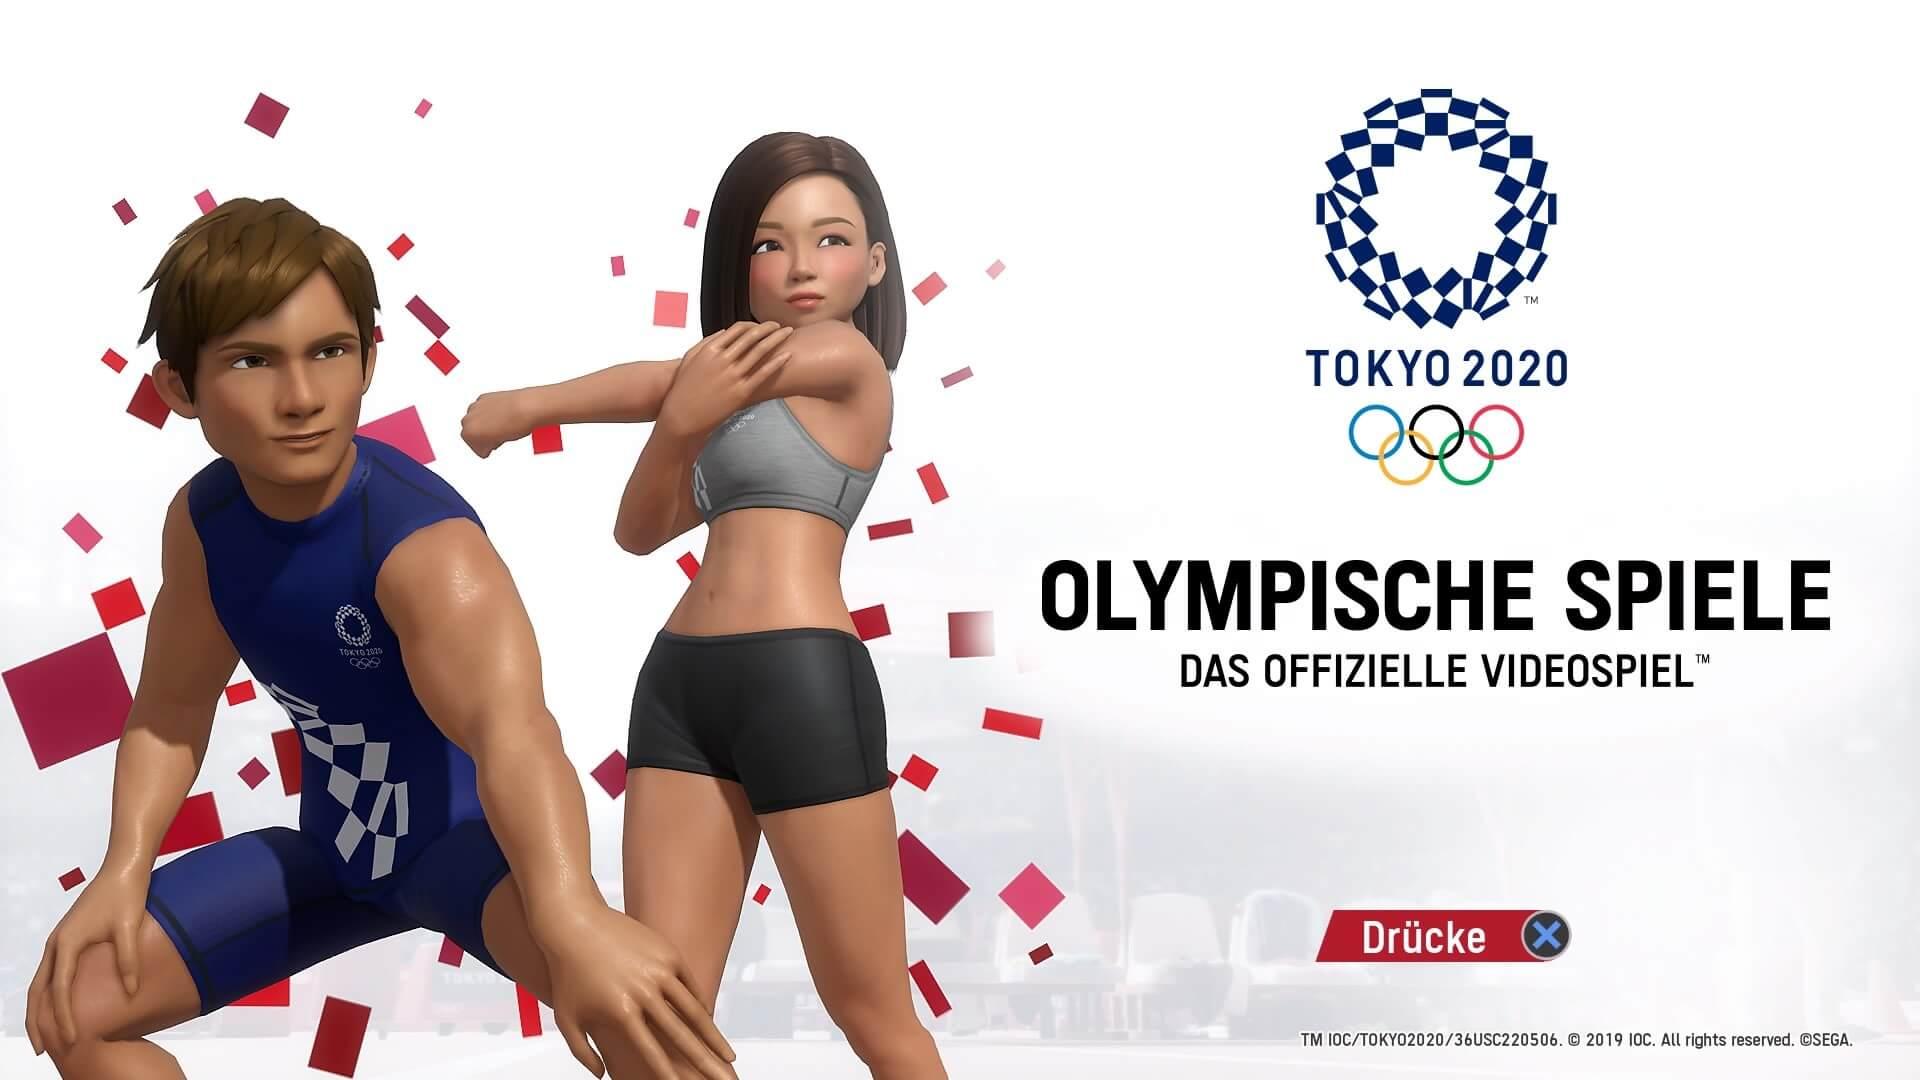 olympische spiele tokio 2020™ 20210624185434